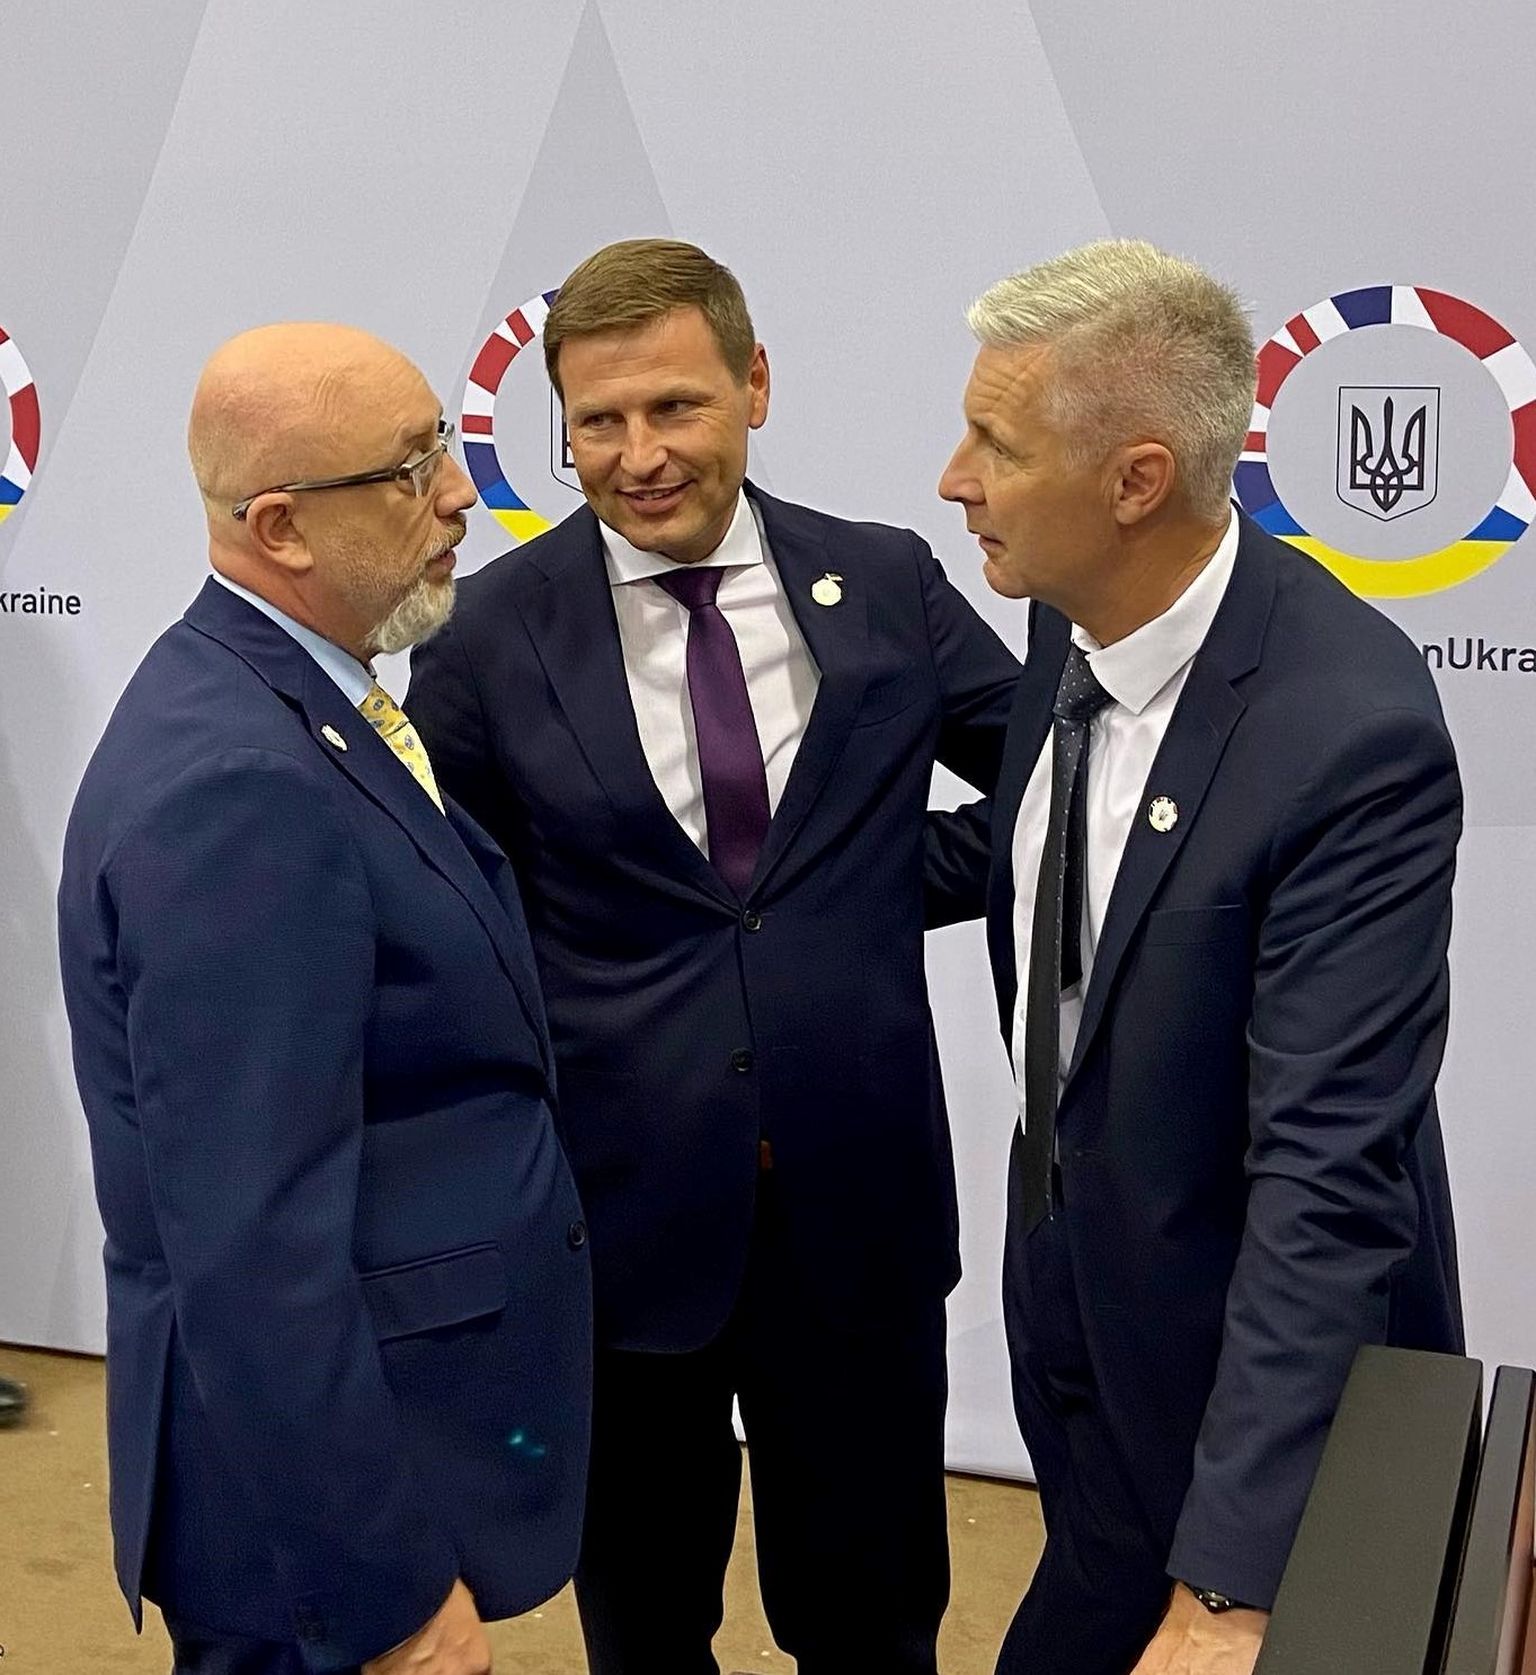 Kaitseminister Hanno Pevkur (keskel) ja tema Ukraina kolleeg Oleksi Reznikov (vasakul) kohtusid Taanis.